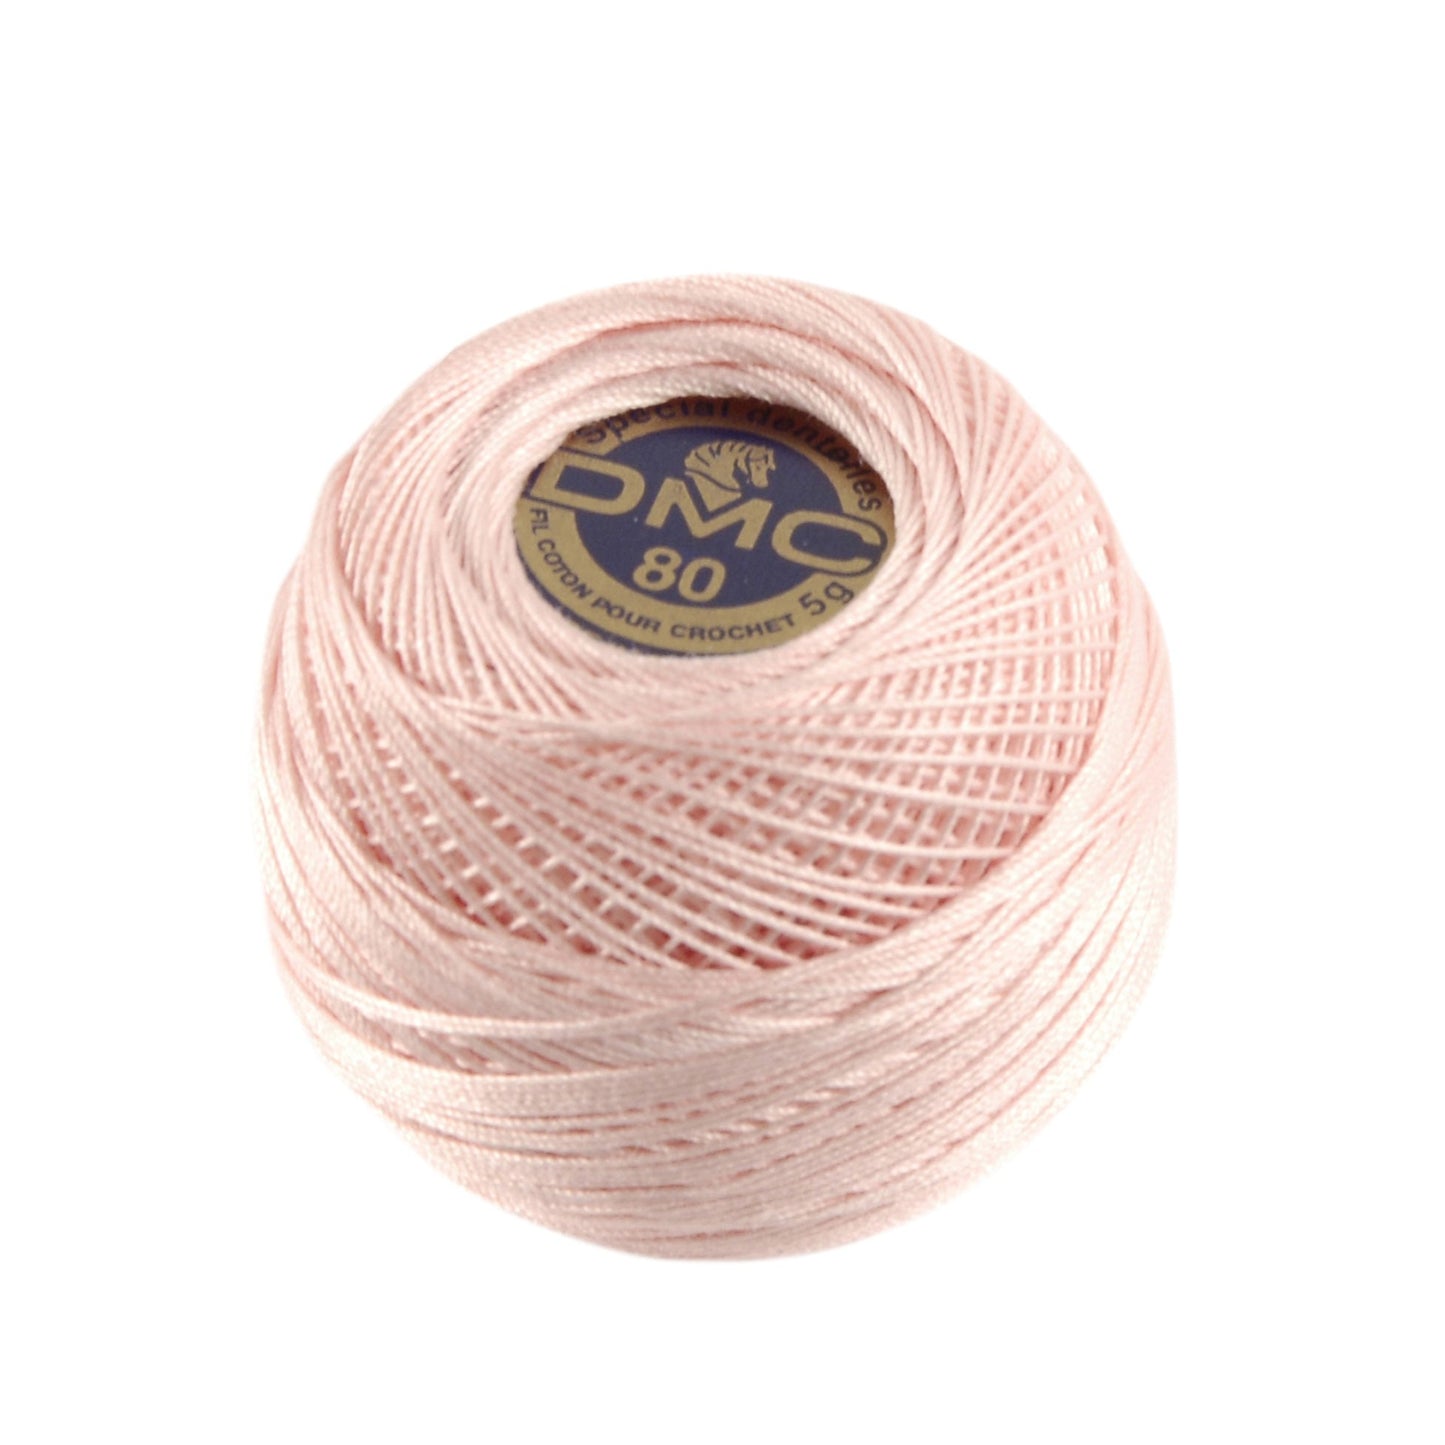 Fil a Dentelle - Lace & Crochet Cotton  - 20g - Size 80